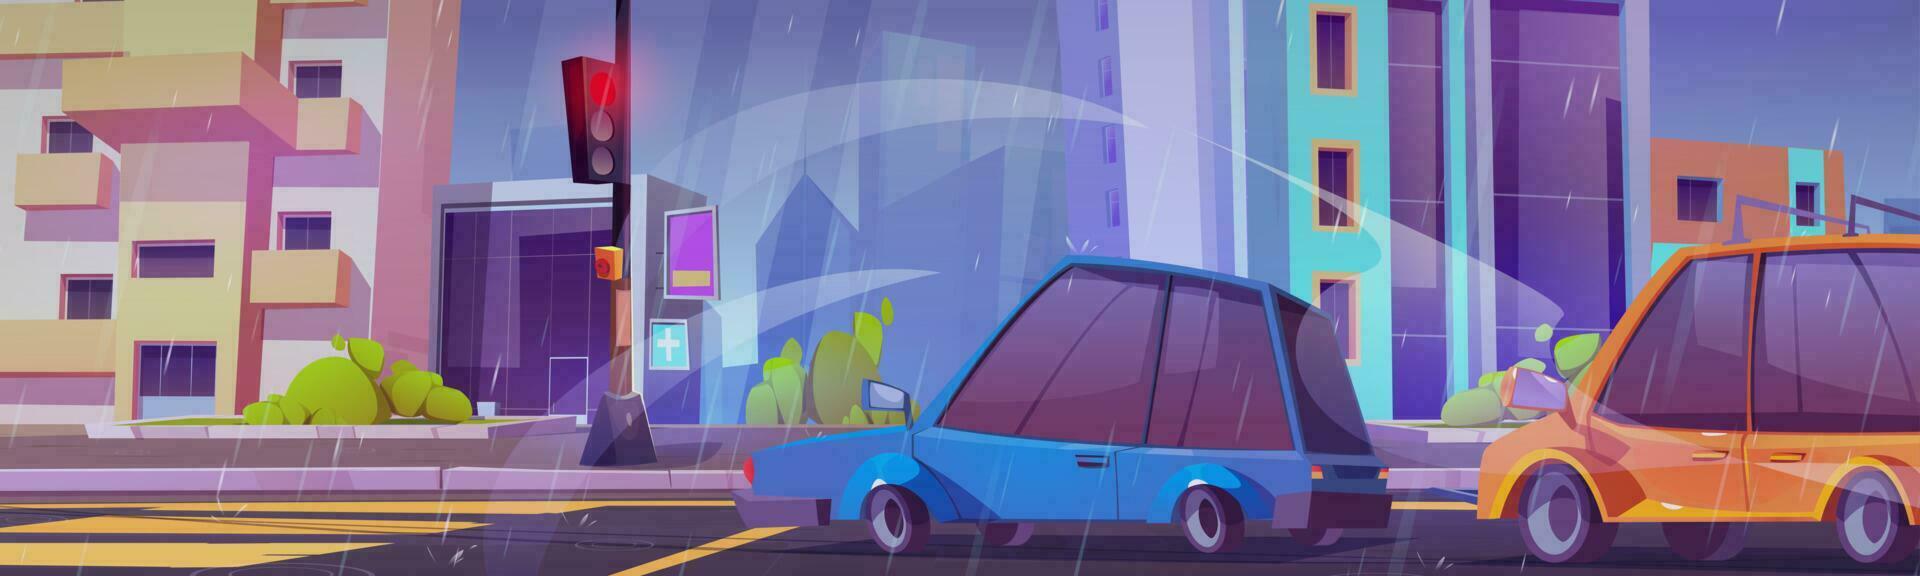 tekenfilm stad straat met auto's in regenachtig weer vector